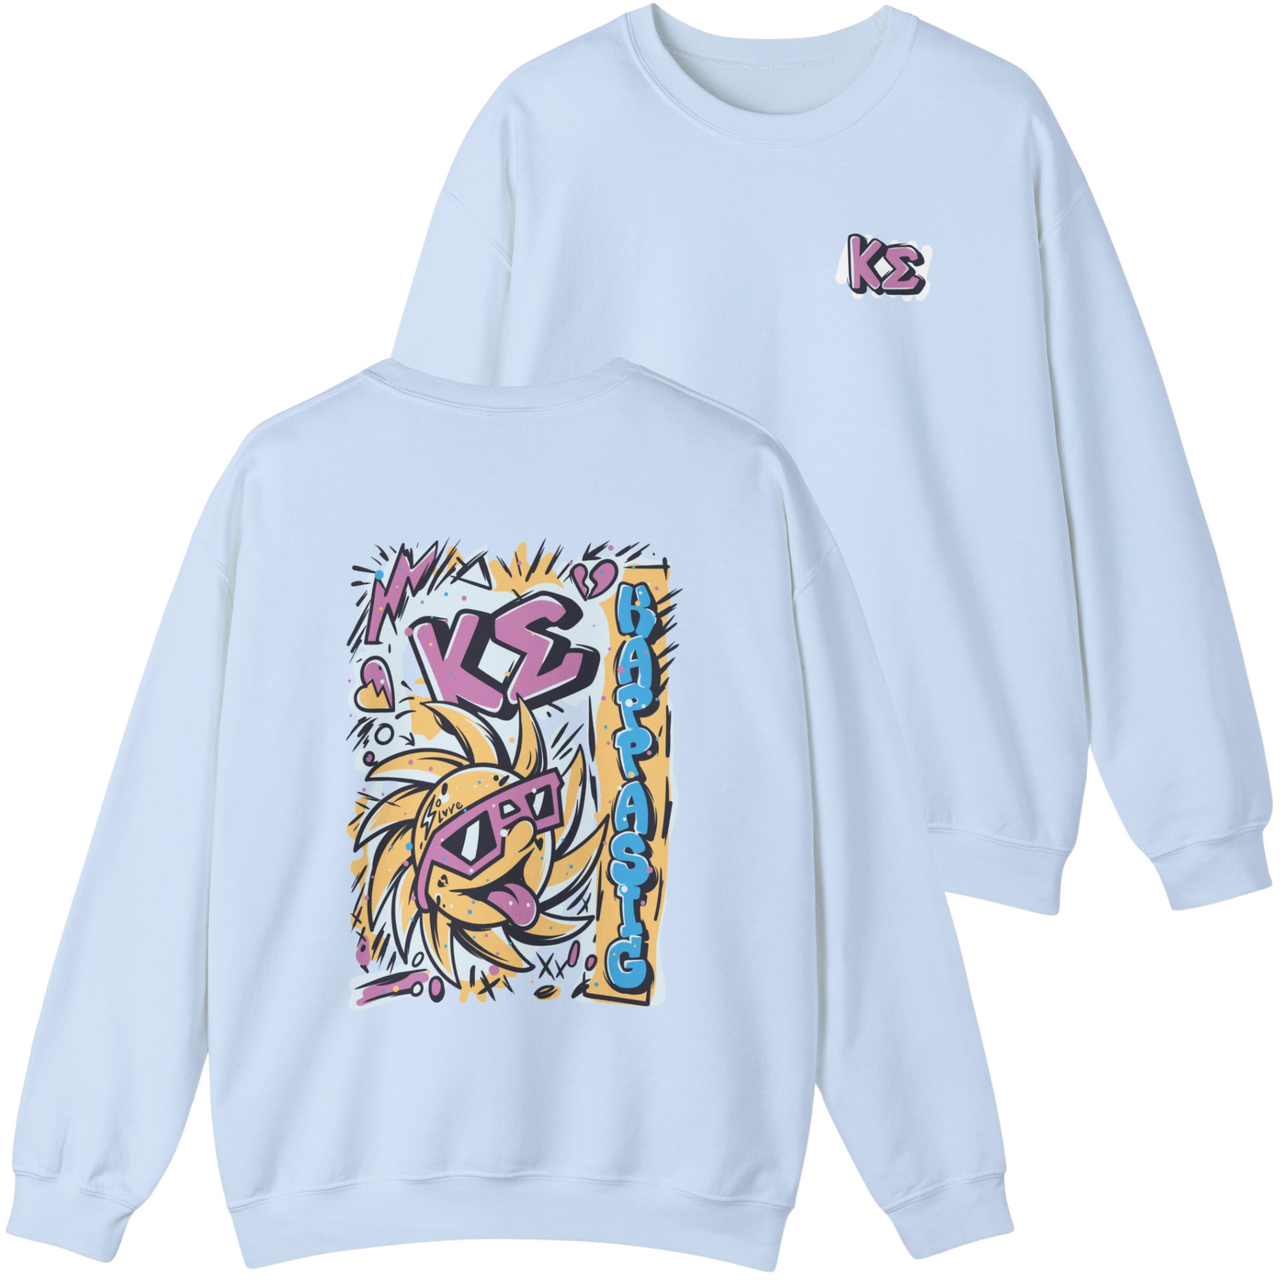 Kappa Sigma Graphic Crewneck Sweatshirt | Fun in the Sun